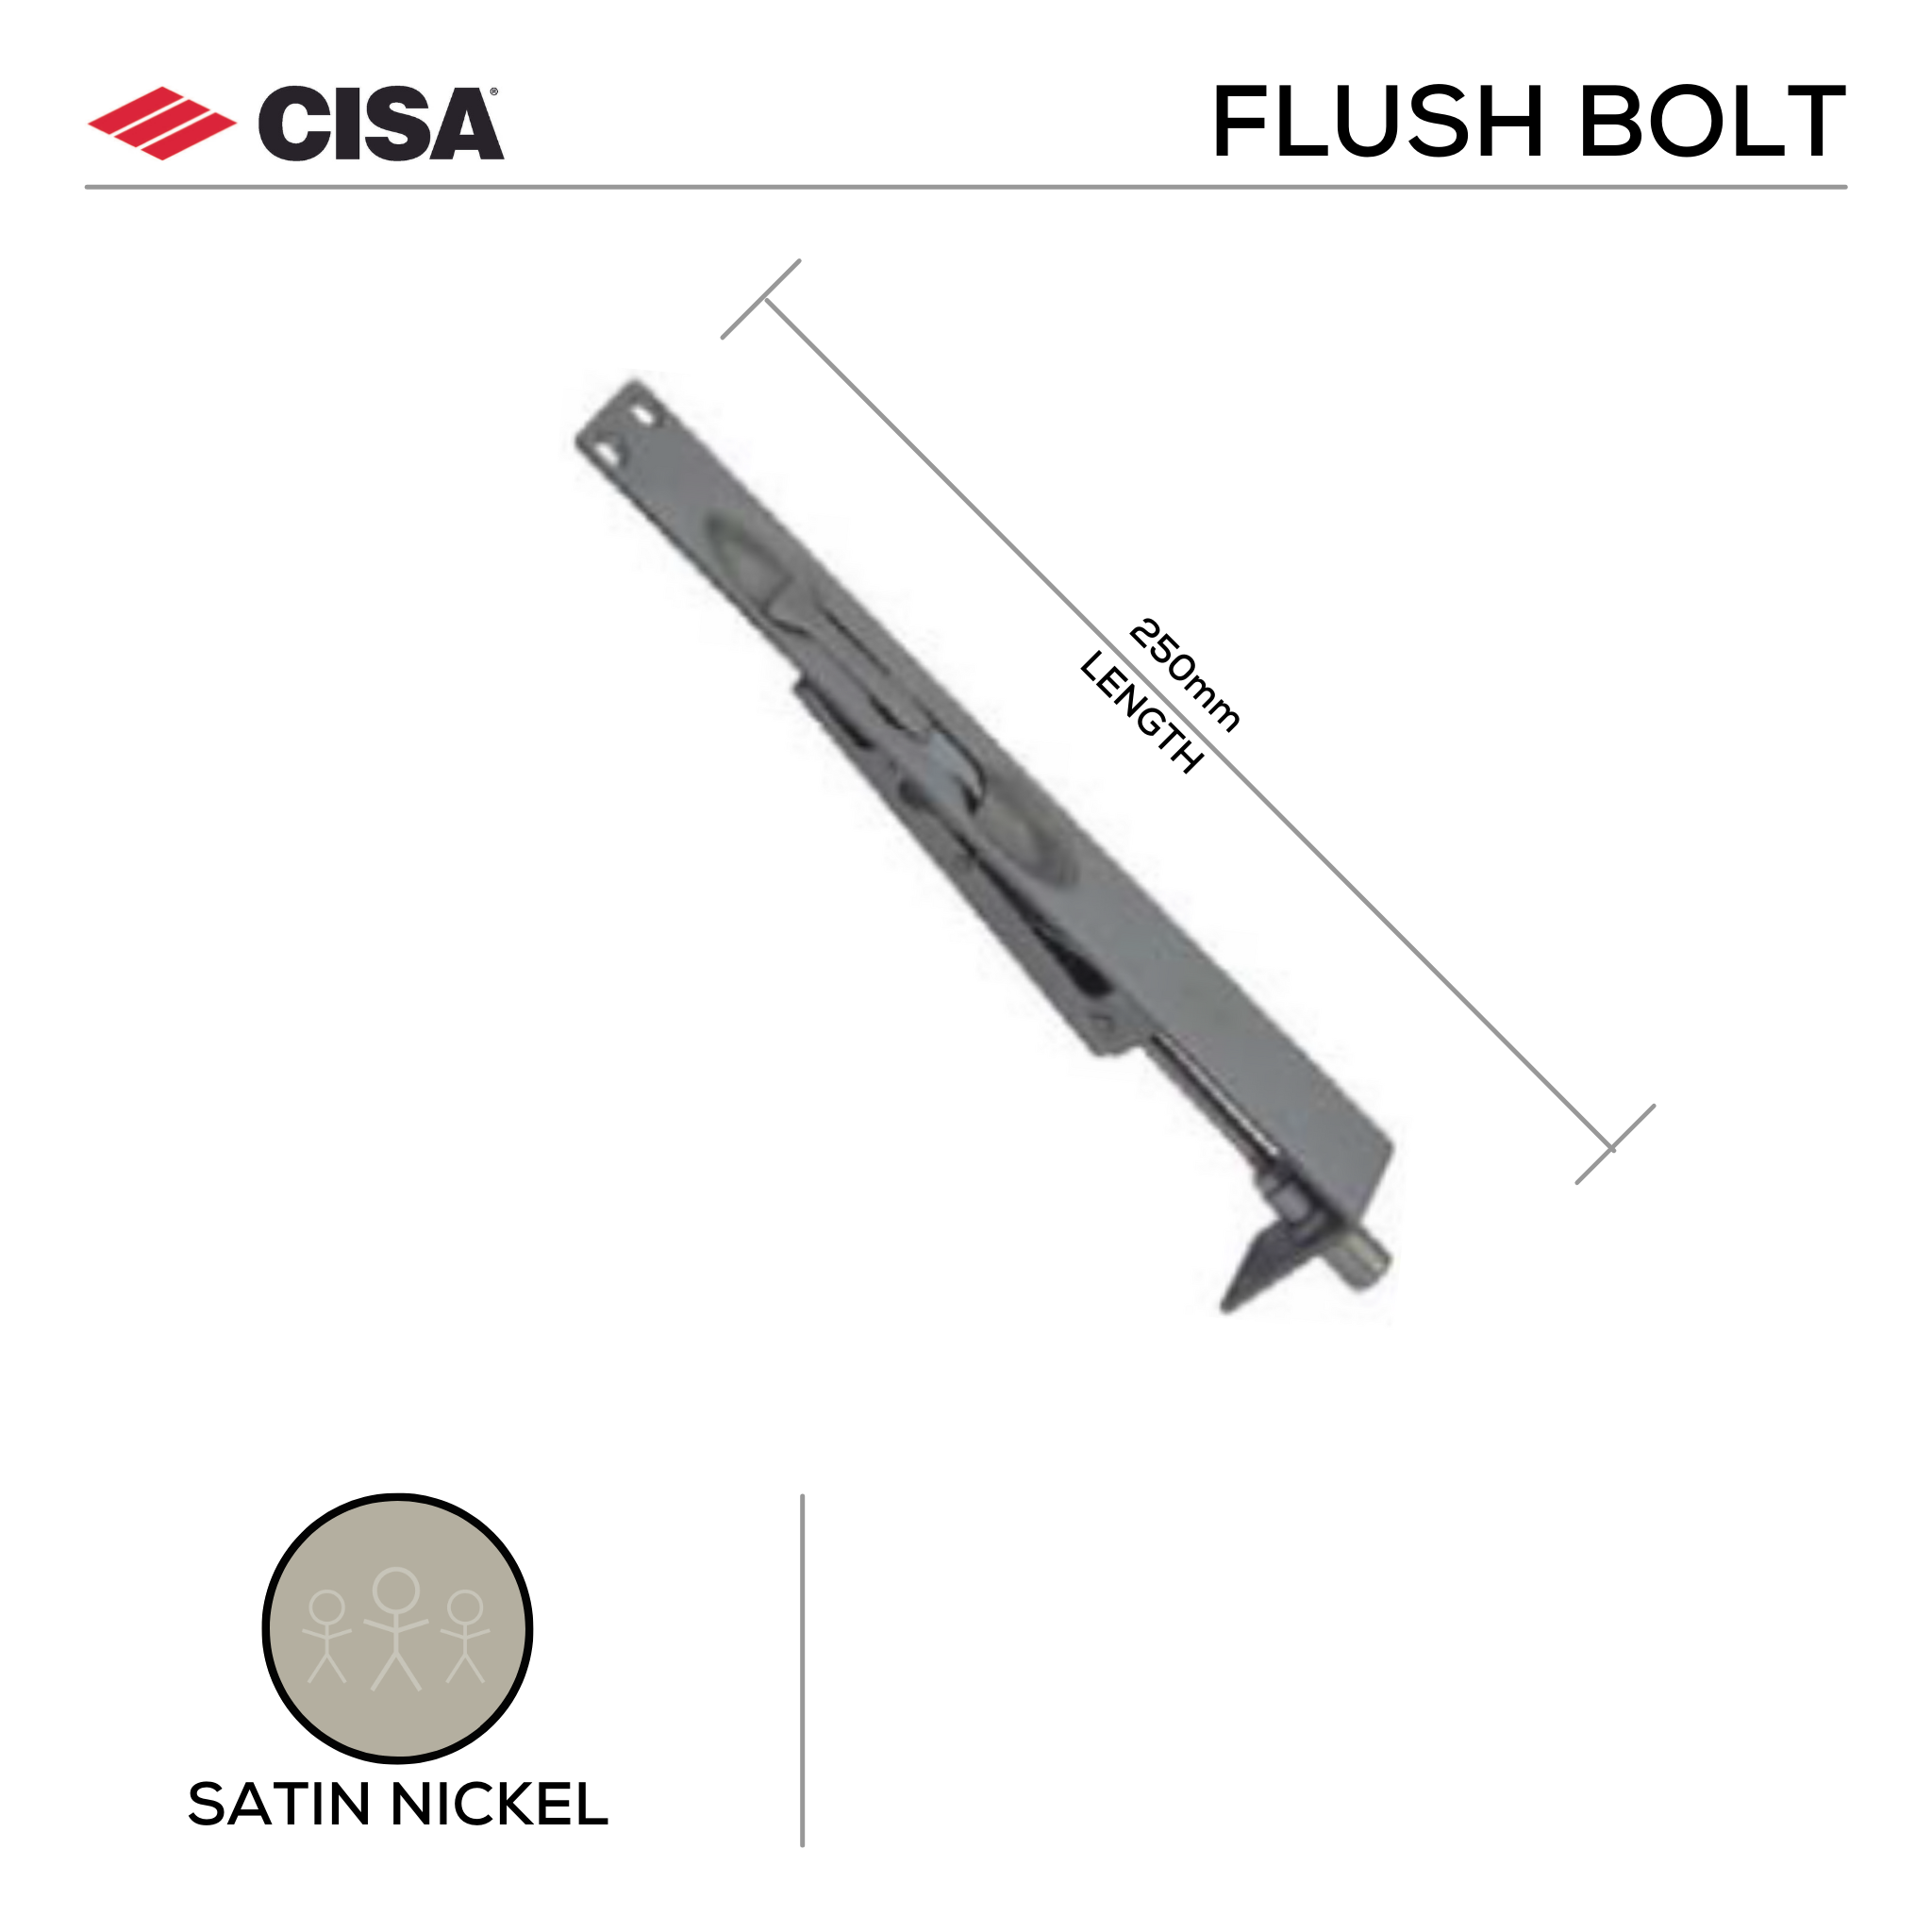 FBM250.SS, Flush Bolt, Mortice Type, 250mm (l) x 25mm (w), Satin Nickel, CISA